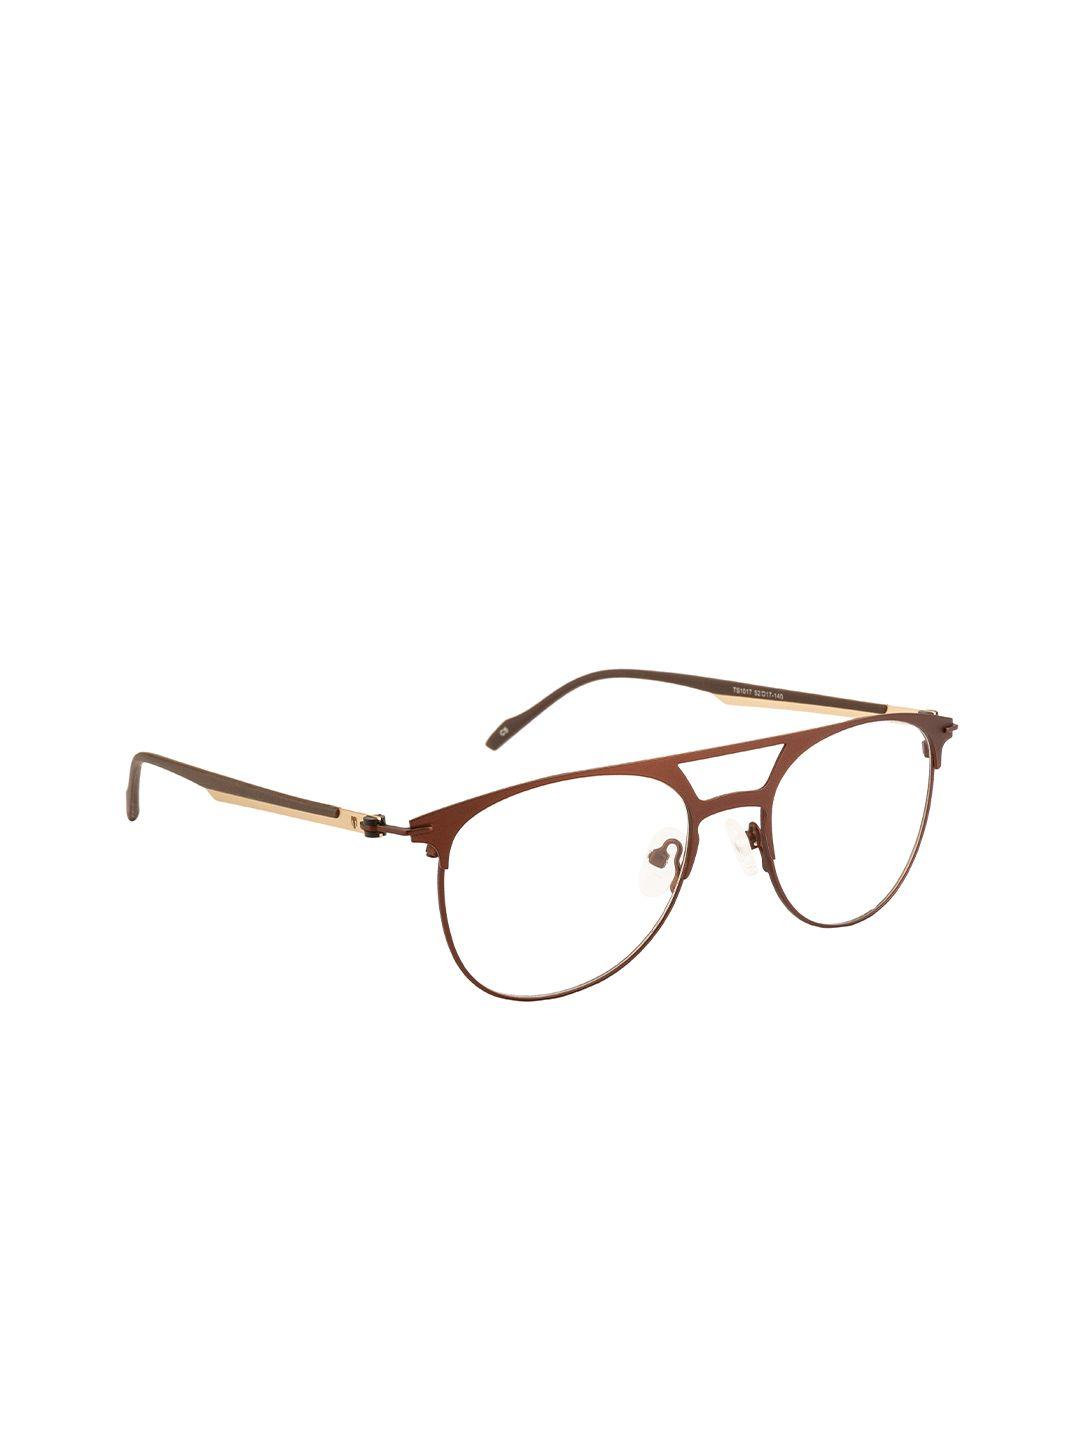 ted smith unisex brown & gold-toned full rim aviator frames eyeglasses